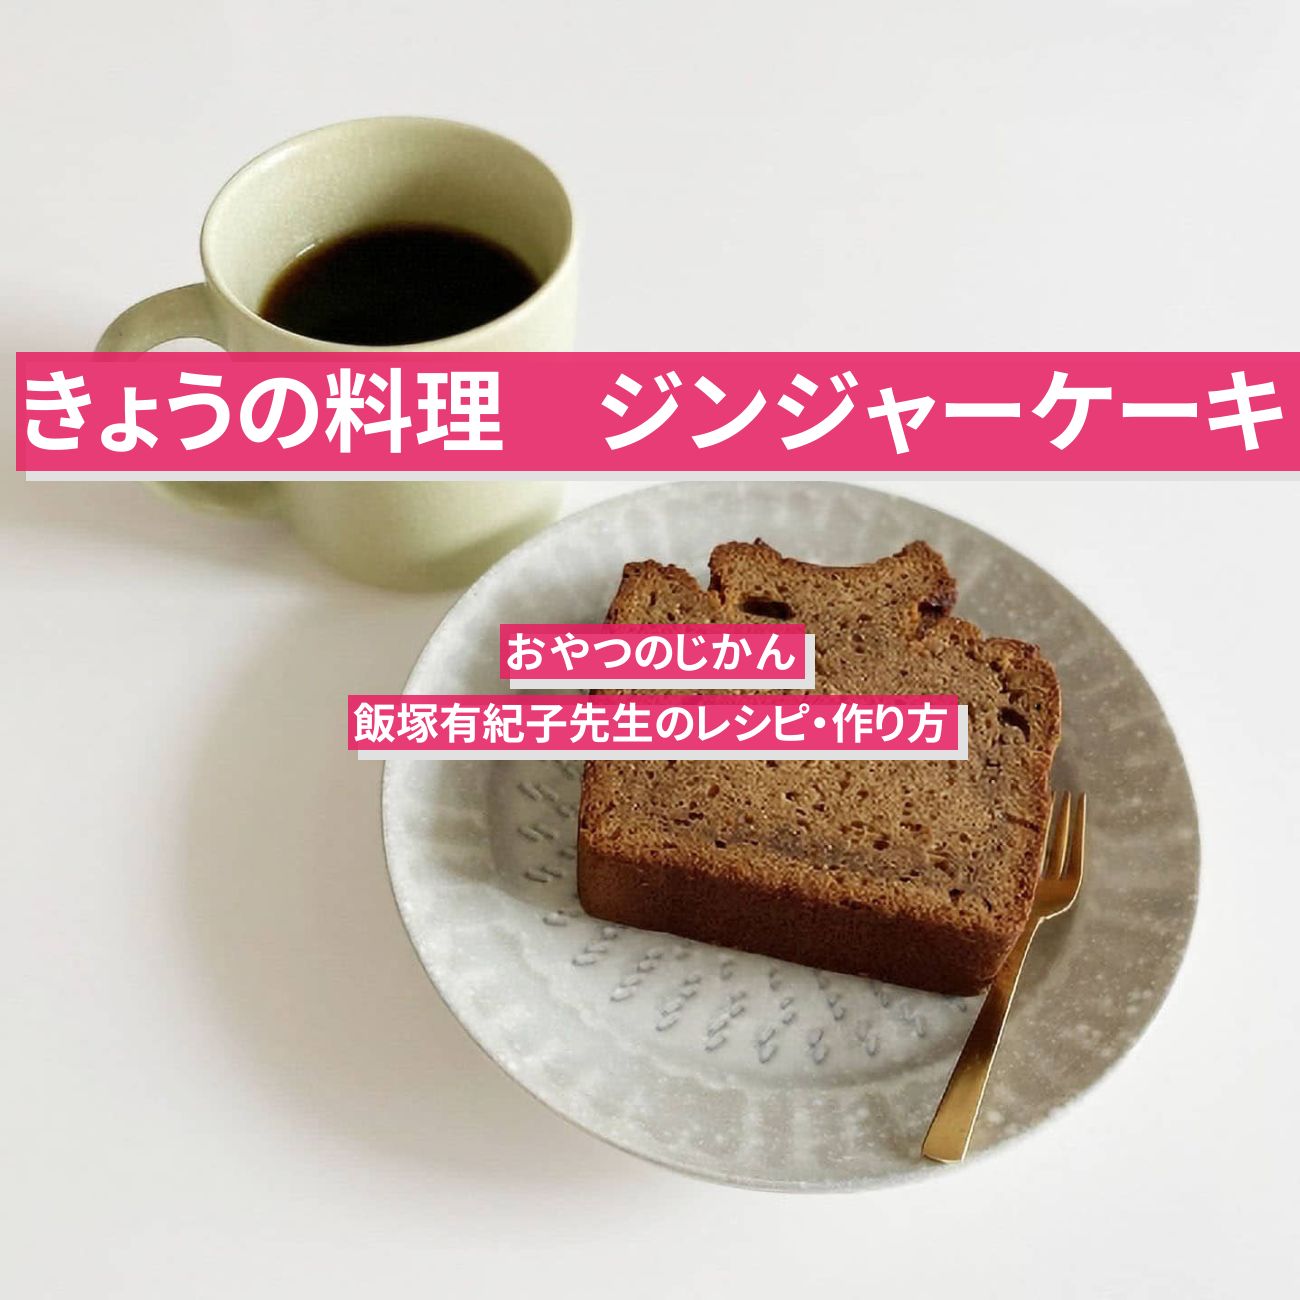 【きょうの料理】『ジンジャーケーキ』飯塚有紀子先生のレシピ・作り方